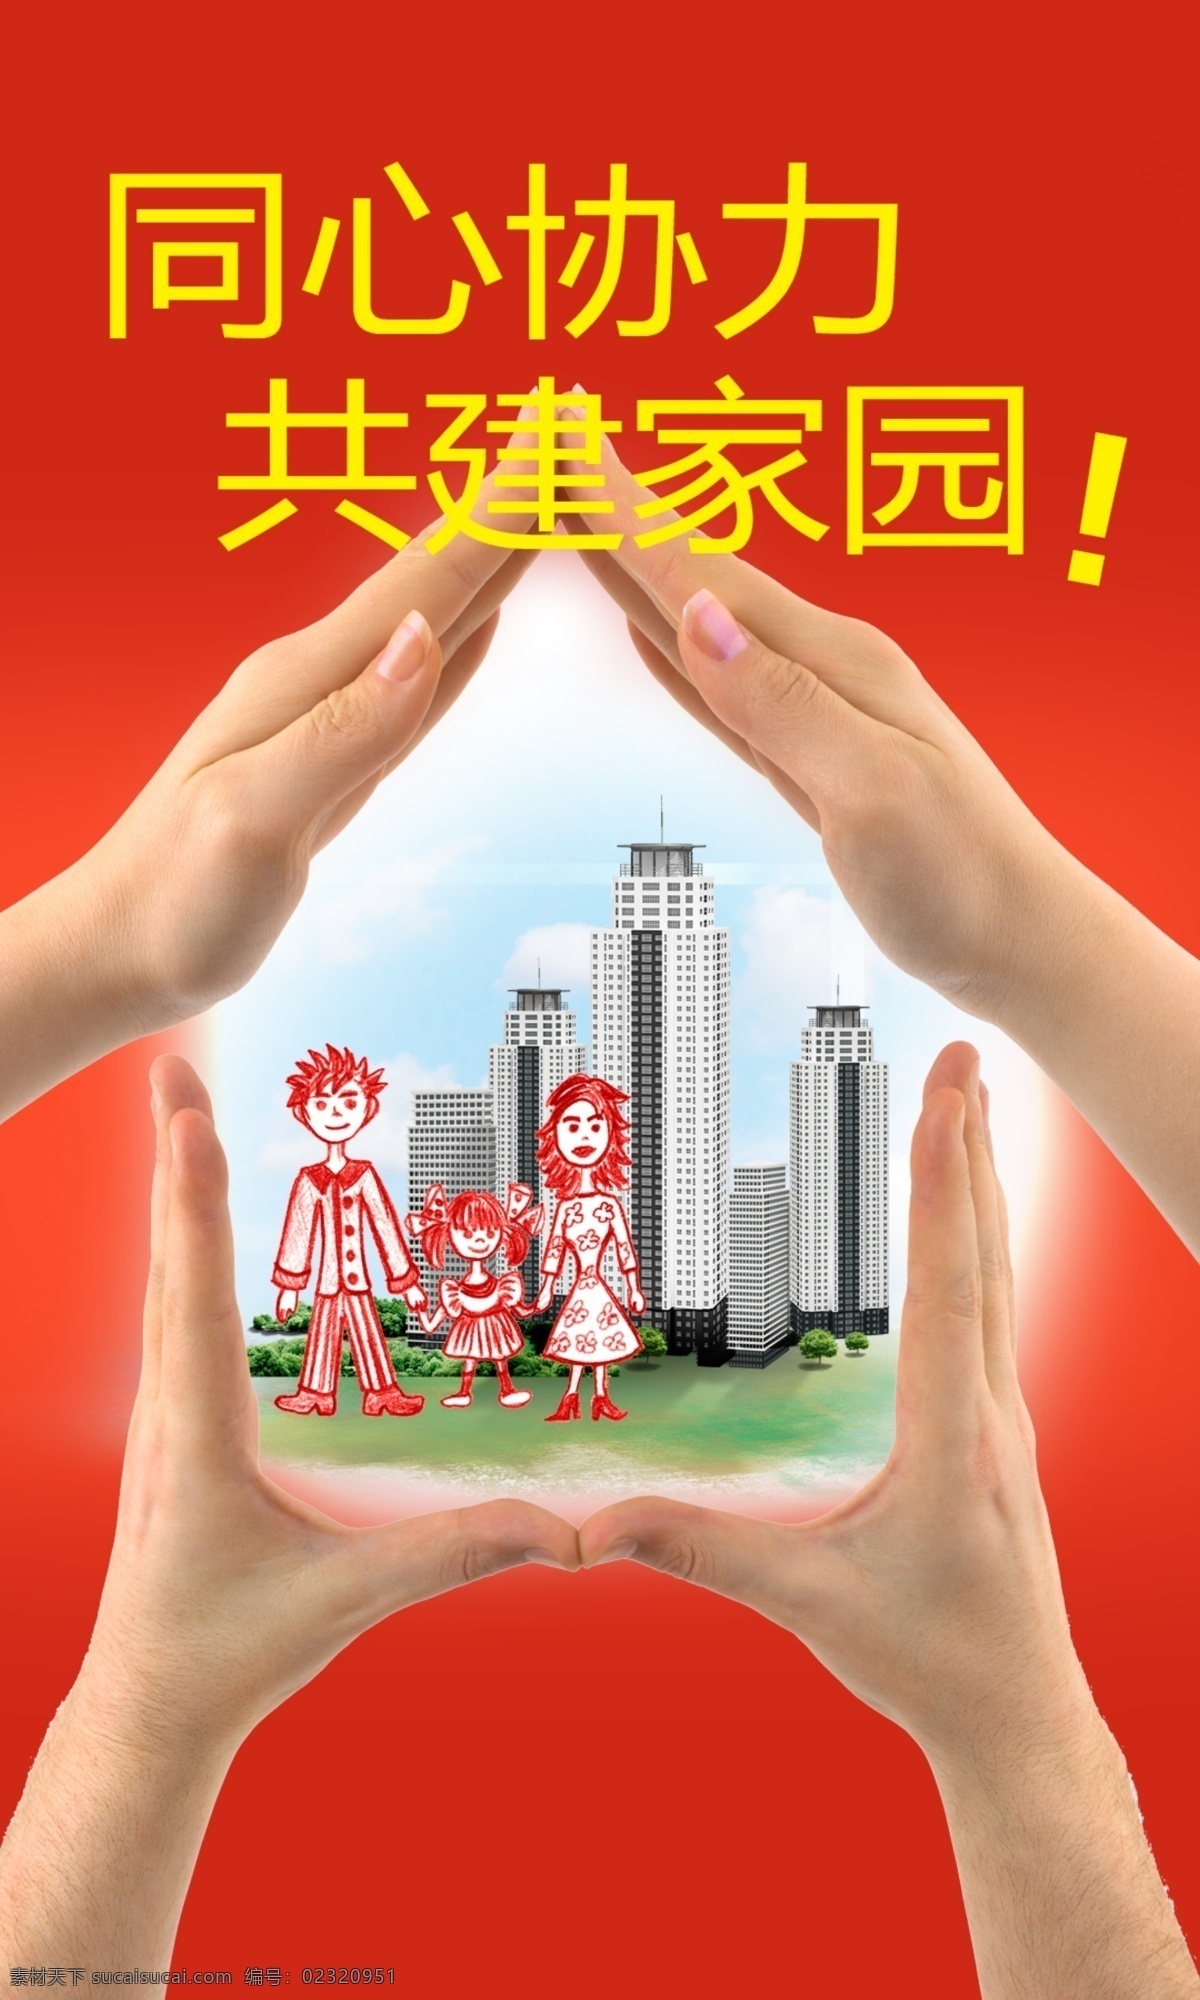 地震公益广告 地震 祈福 公益 广告 雅安 招贴设计 红色